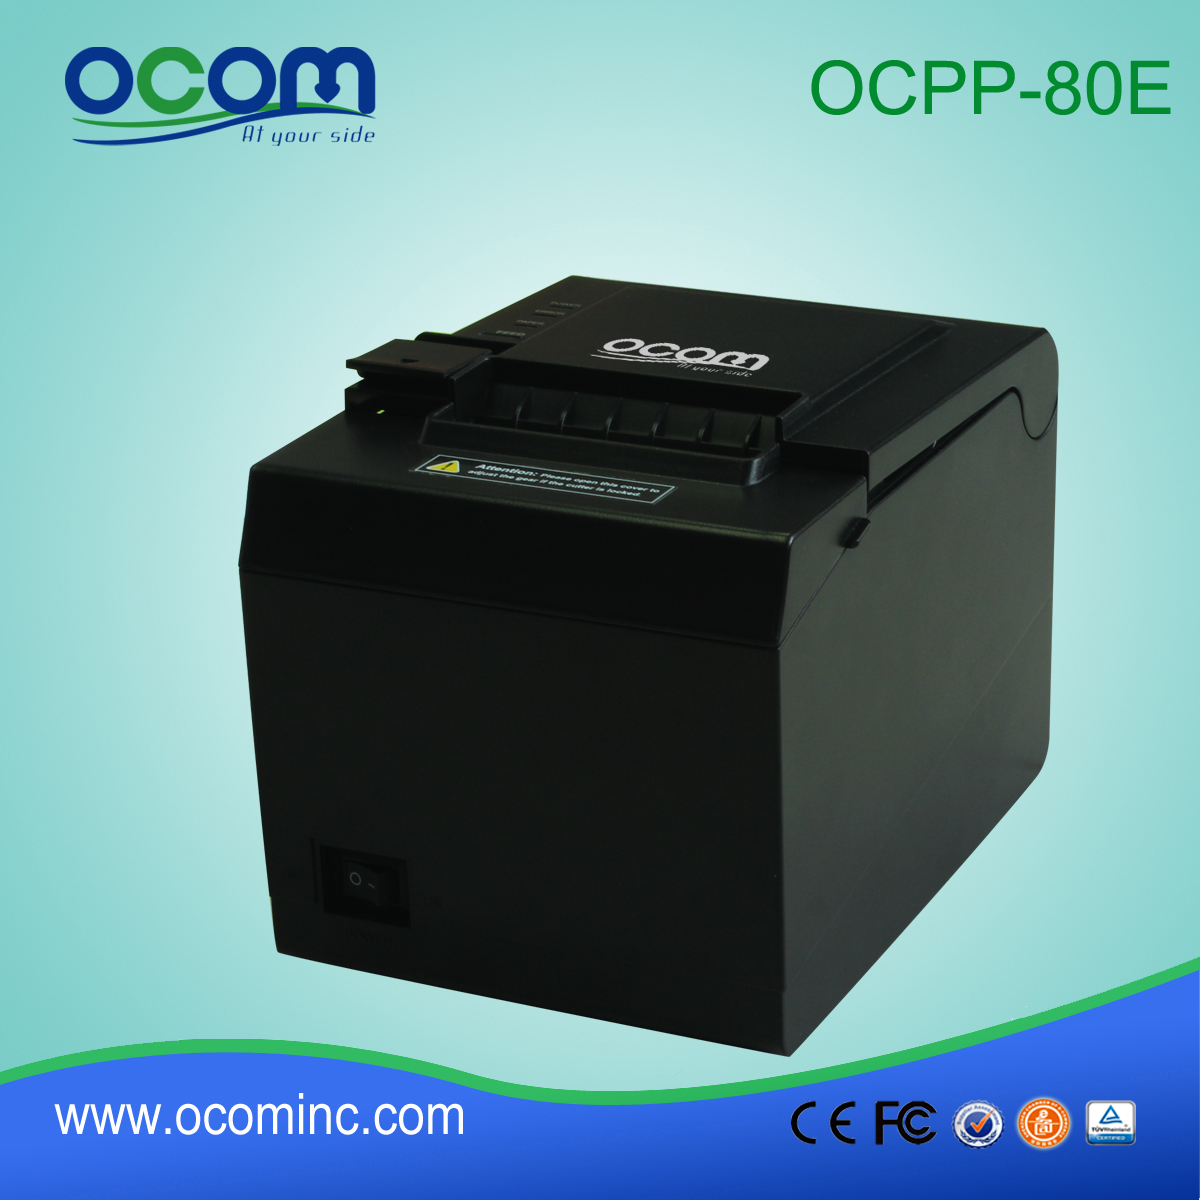 OCPP-80E billige 80 mm POS Thermal Quittung Drucker mit Auto Cutter